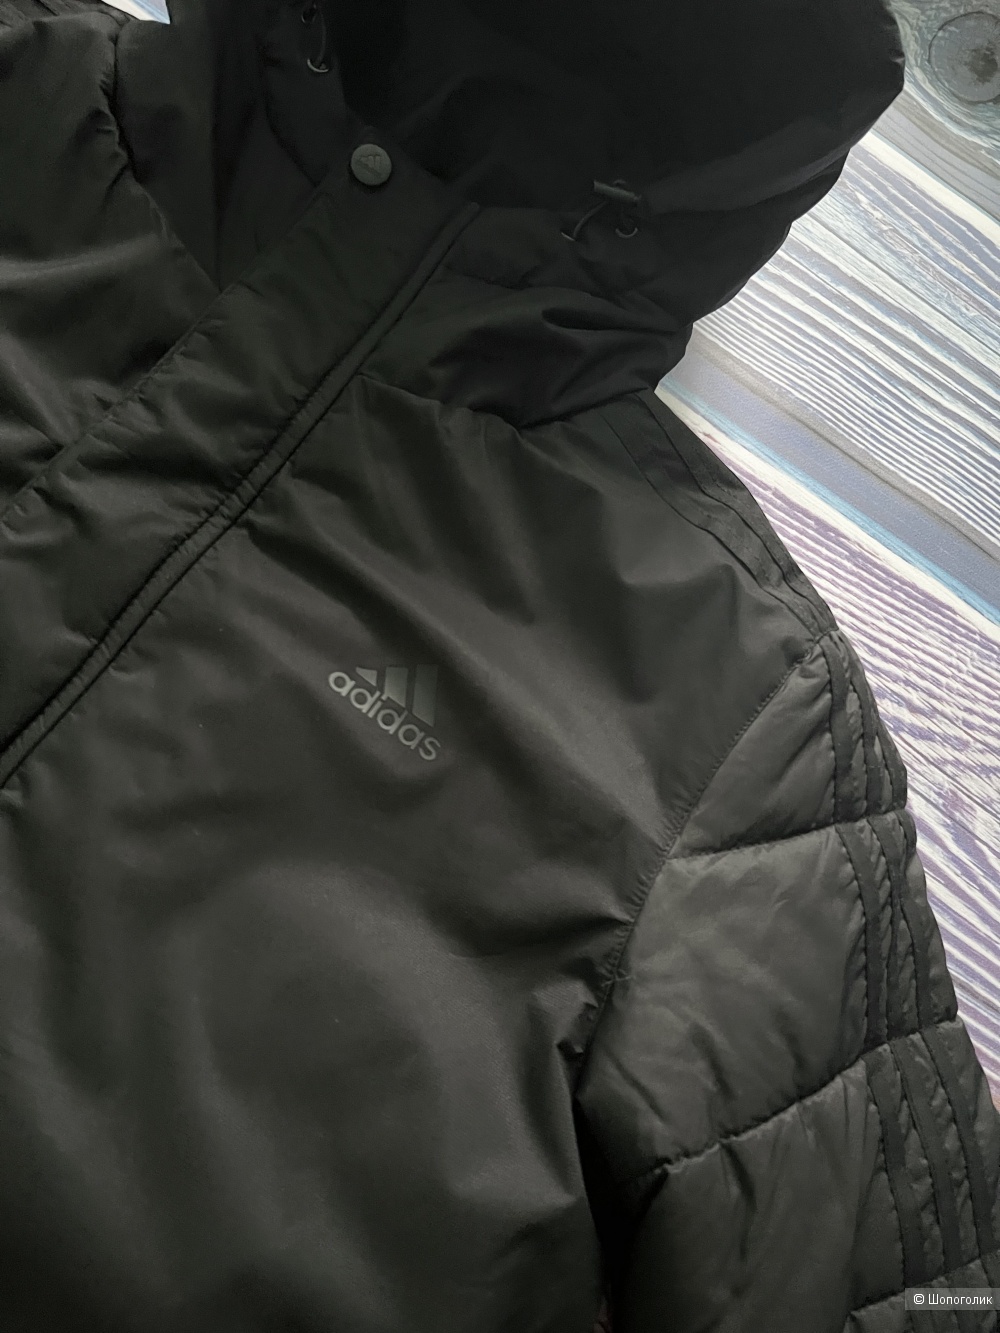 Мужские зимние куртки Adidas р.46-54